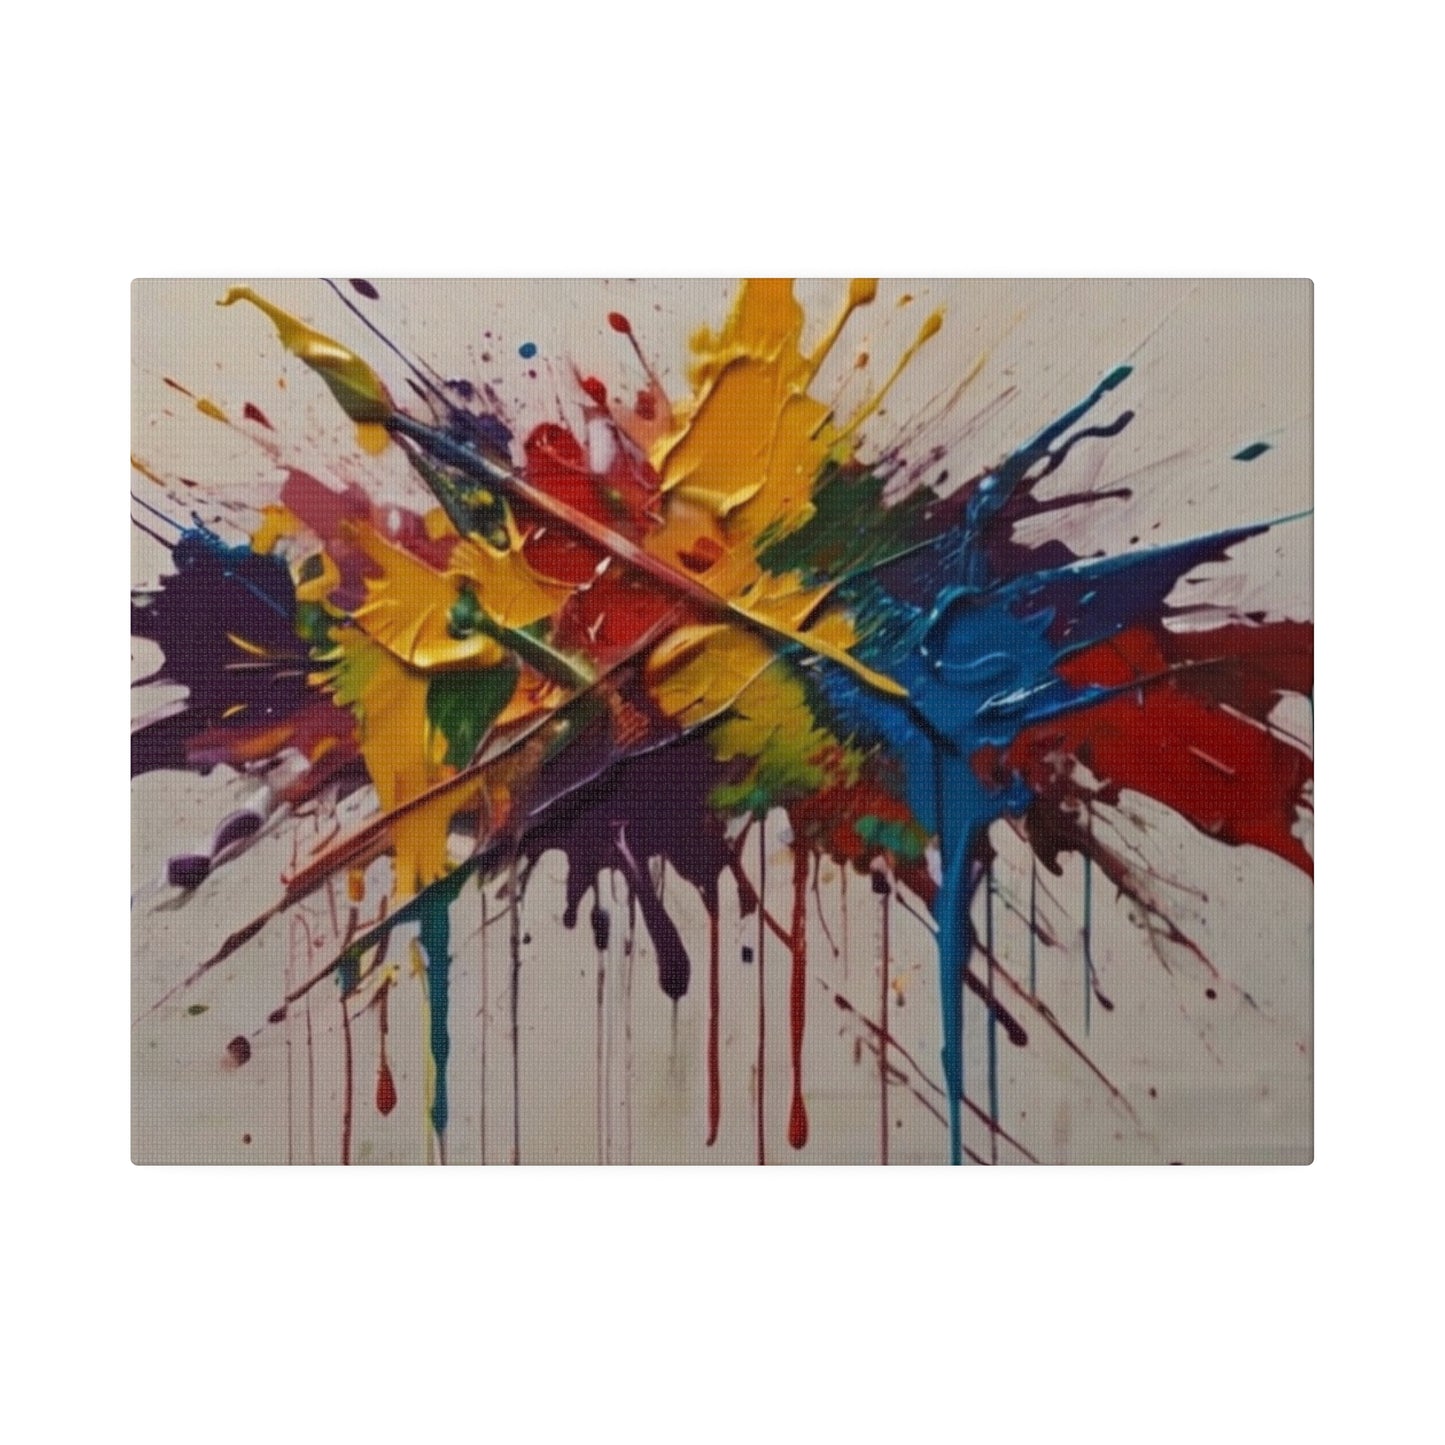 Messy Slash Paint Splatter Canvas - Matte Canvas, Stretched, 0.75"